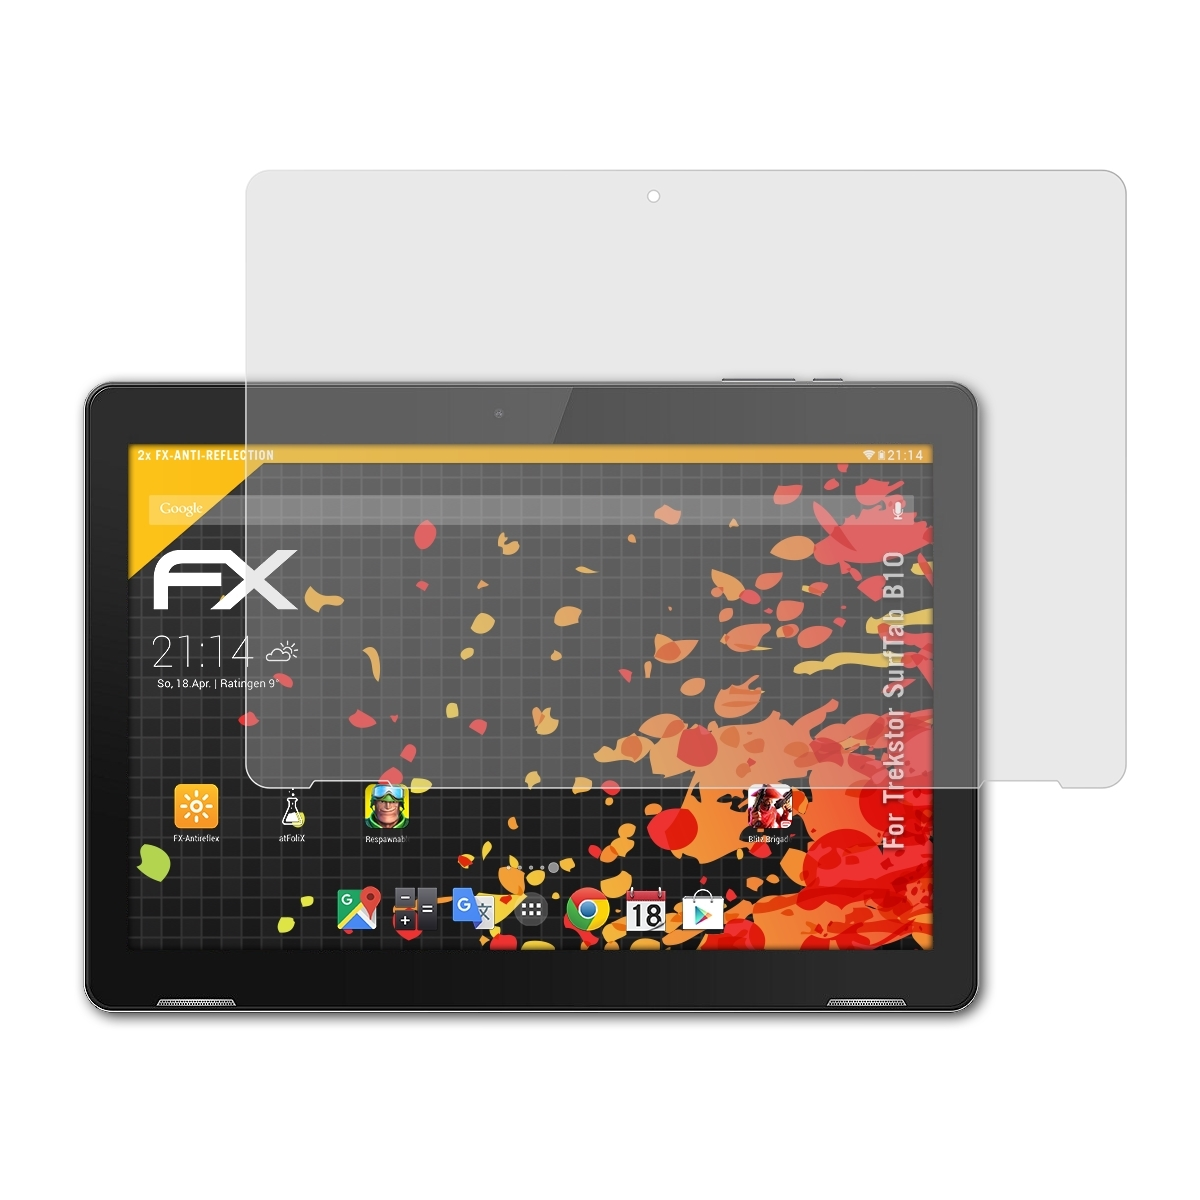 ATFOLIX 2x FX-Antireflex Displayschutz(für Trekstor SurfTab B10)